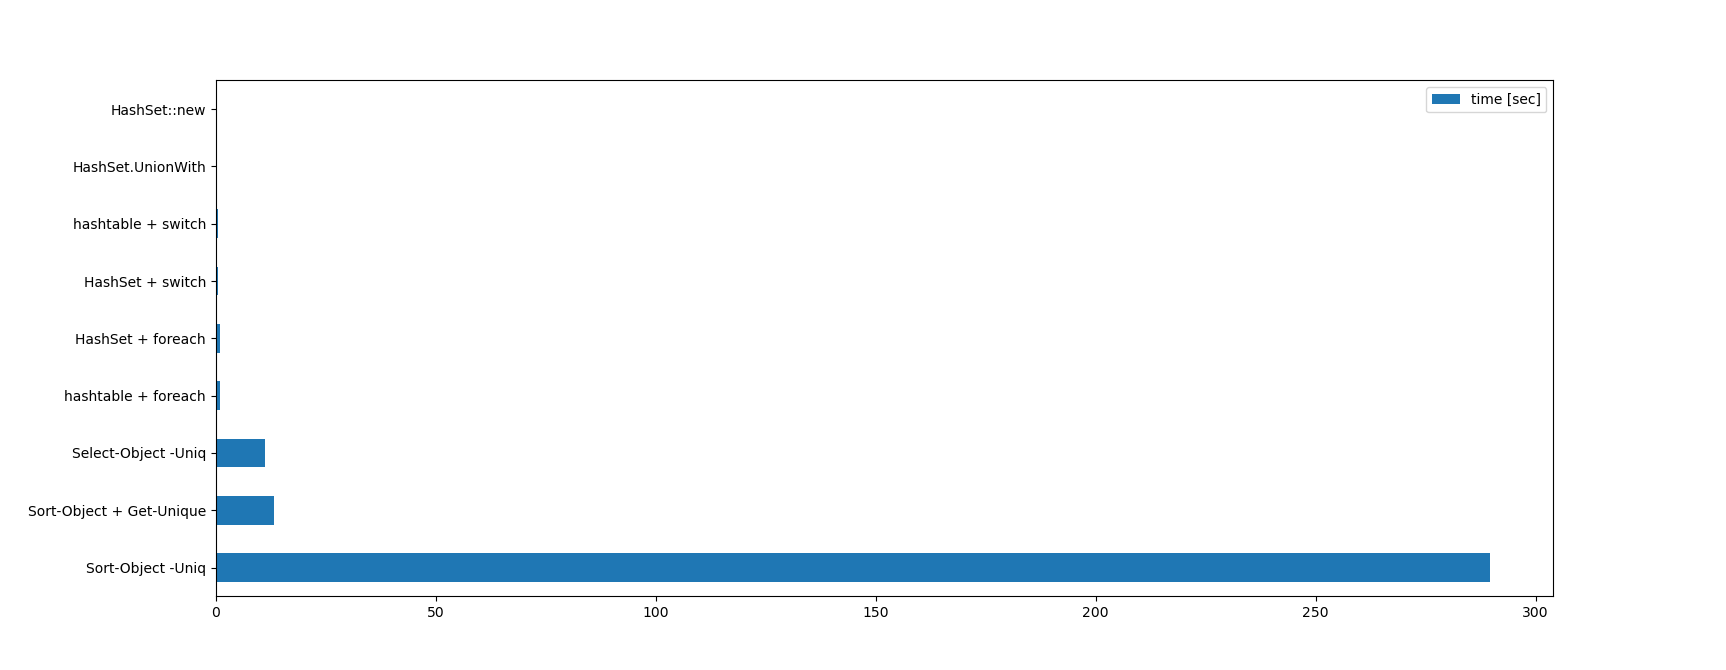 上記の表を棒グラフにしたもの。Sort-Object -Uniqがズバ抜けて遅い様子がよく分かる。次いでSelect-Object -UniqとSort-Object + Get-Uniqueが並び、あとの6つは半ば見えないくらい細い棒になっている。